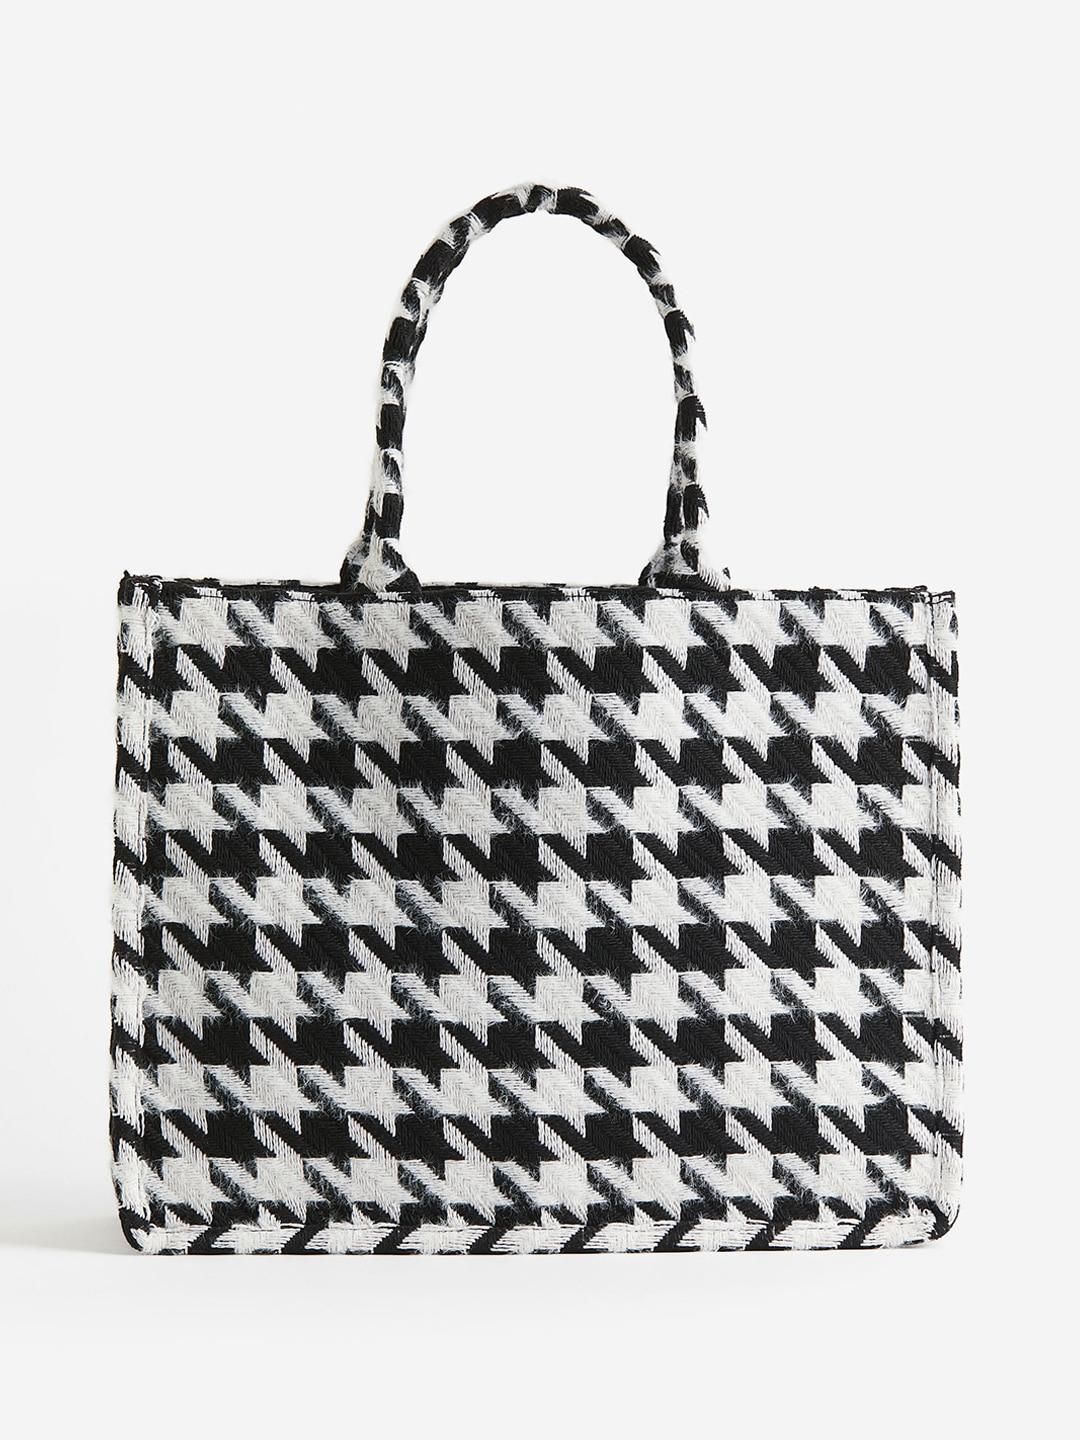 H&M Self-Design Shopper Tote Bag